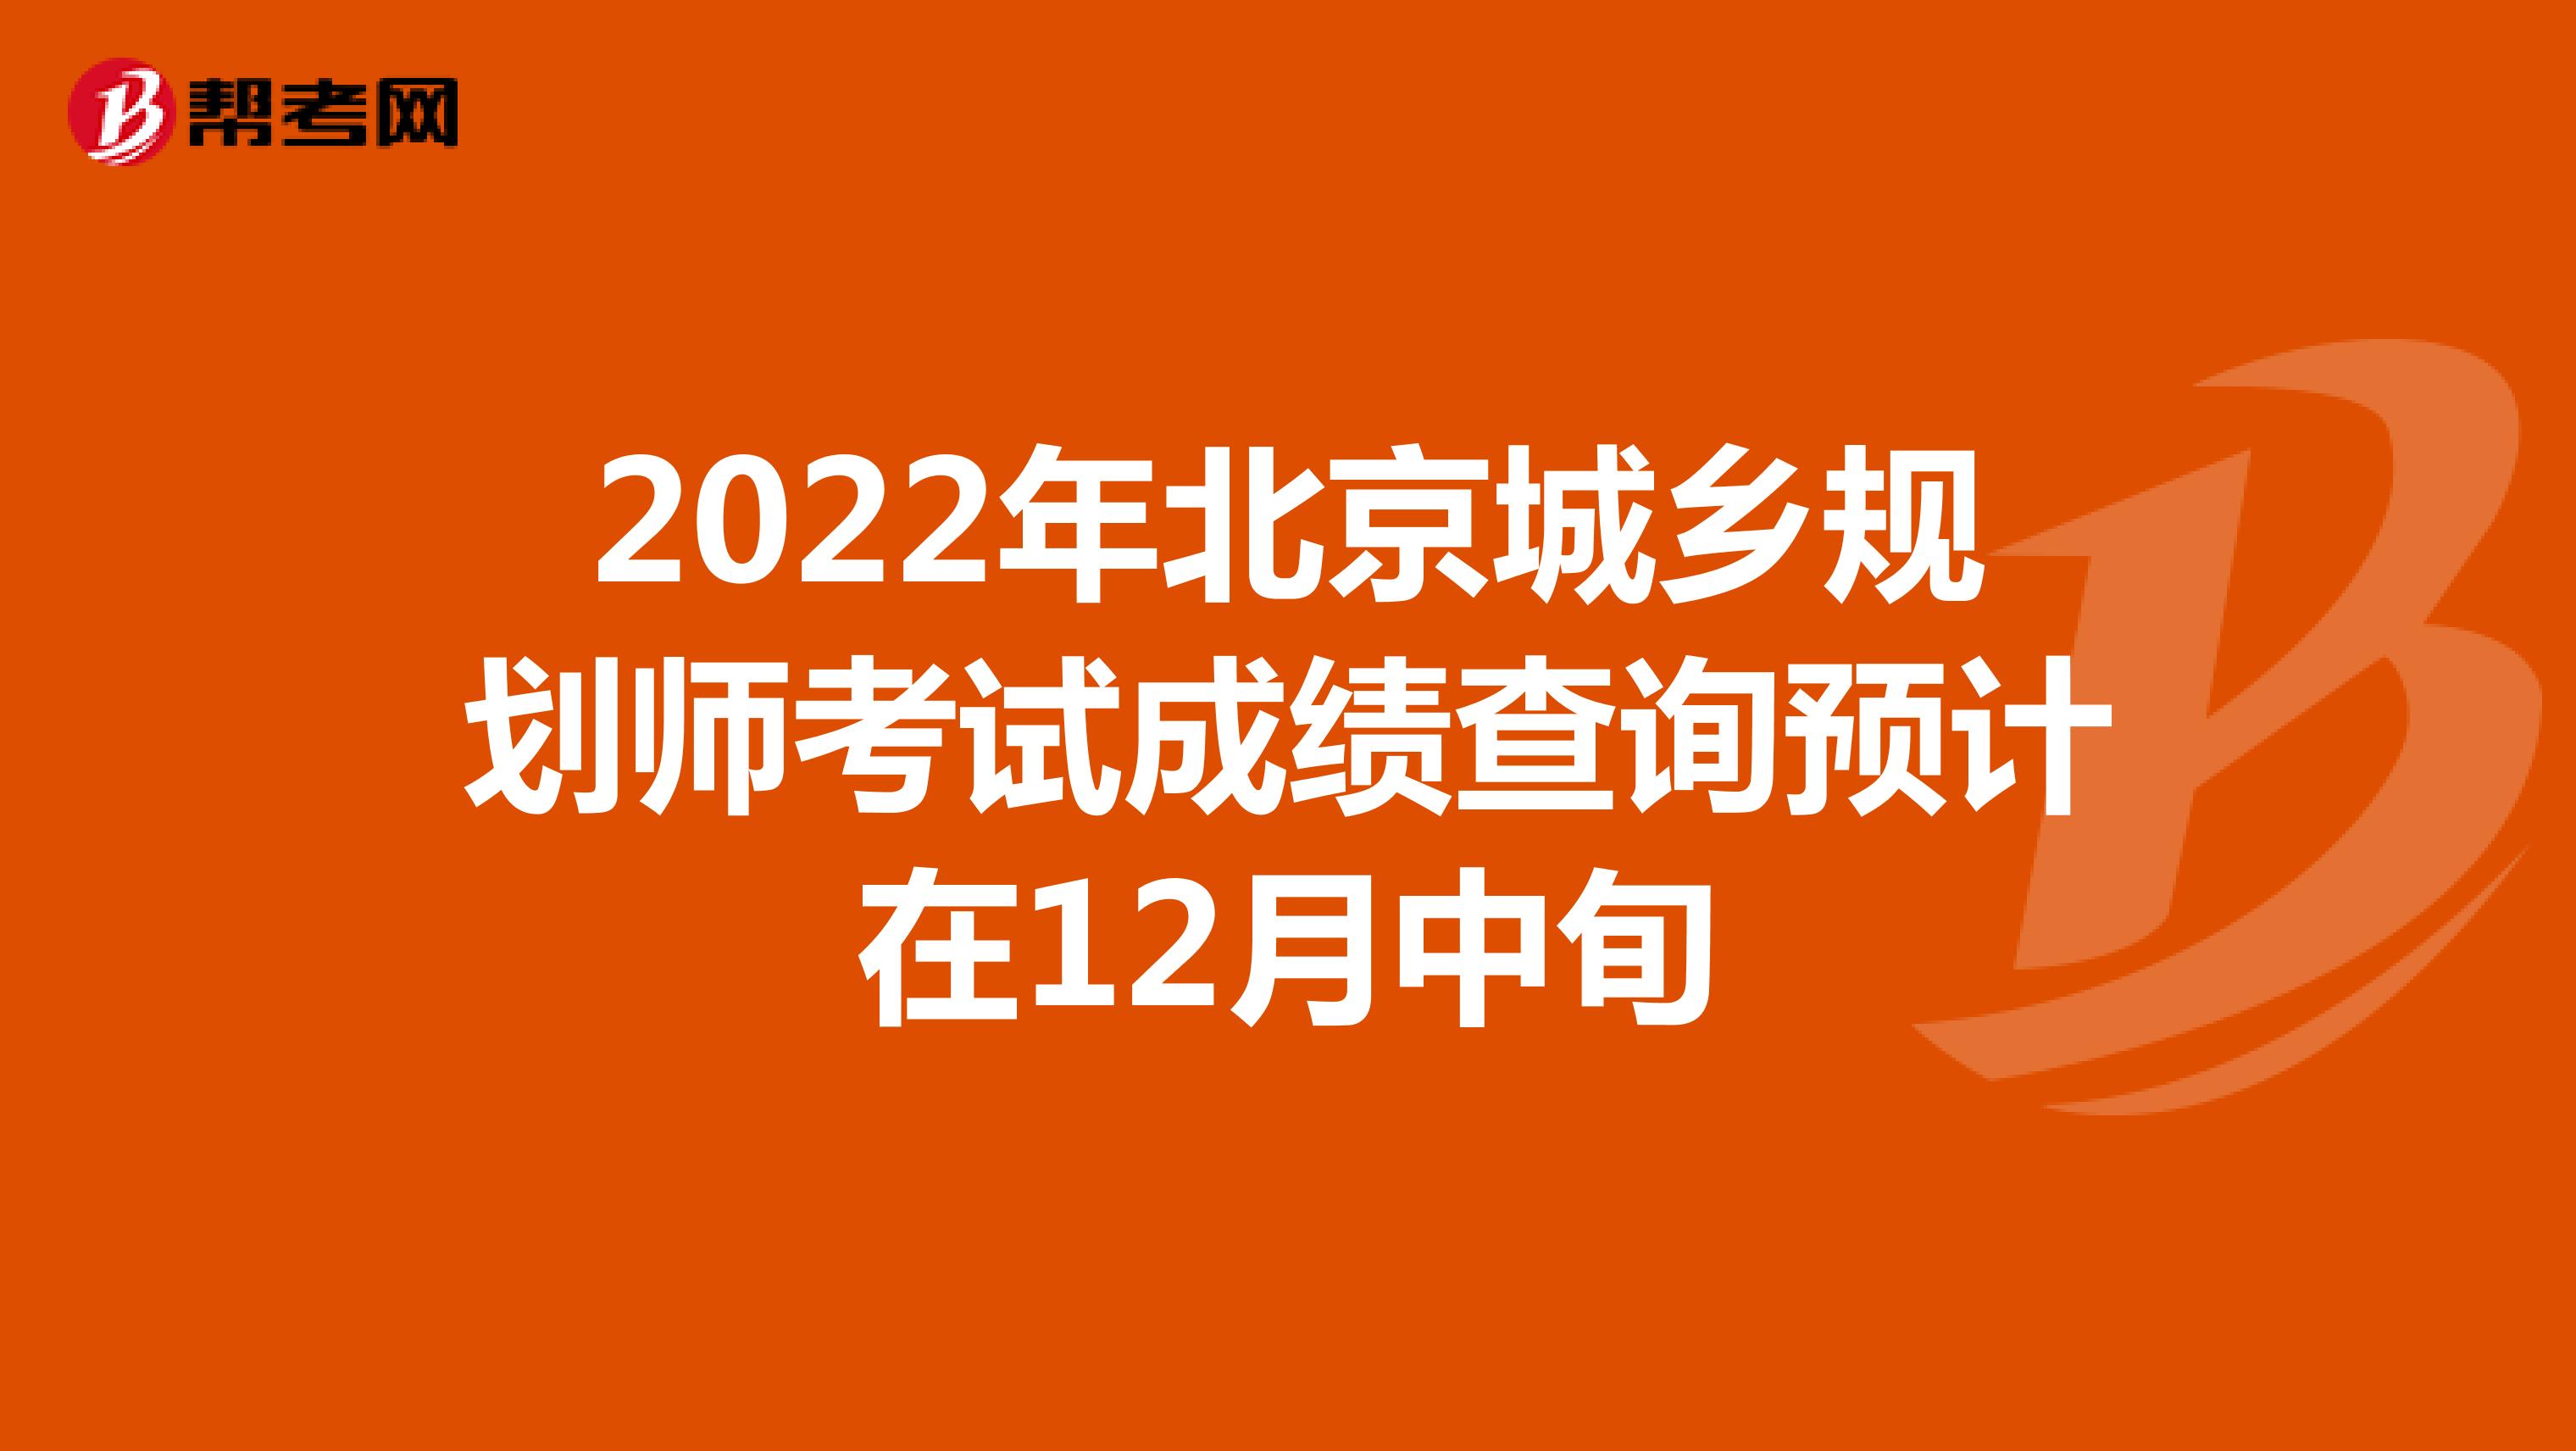 2022年北京城乡规划师考试成绩查询预计在12月中旬